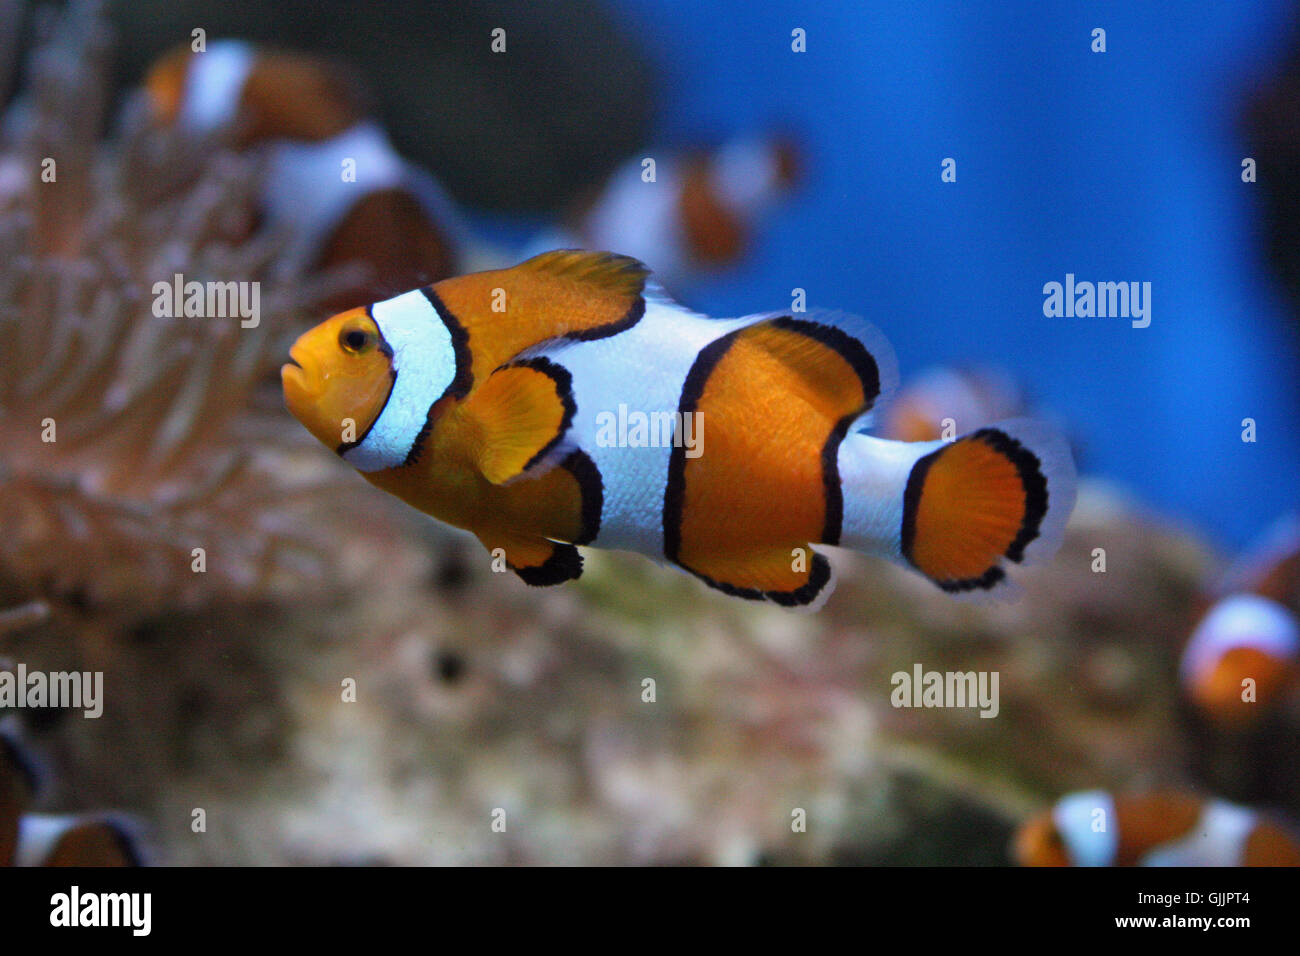 orange-ringed clownfish Stock Photo